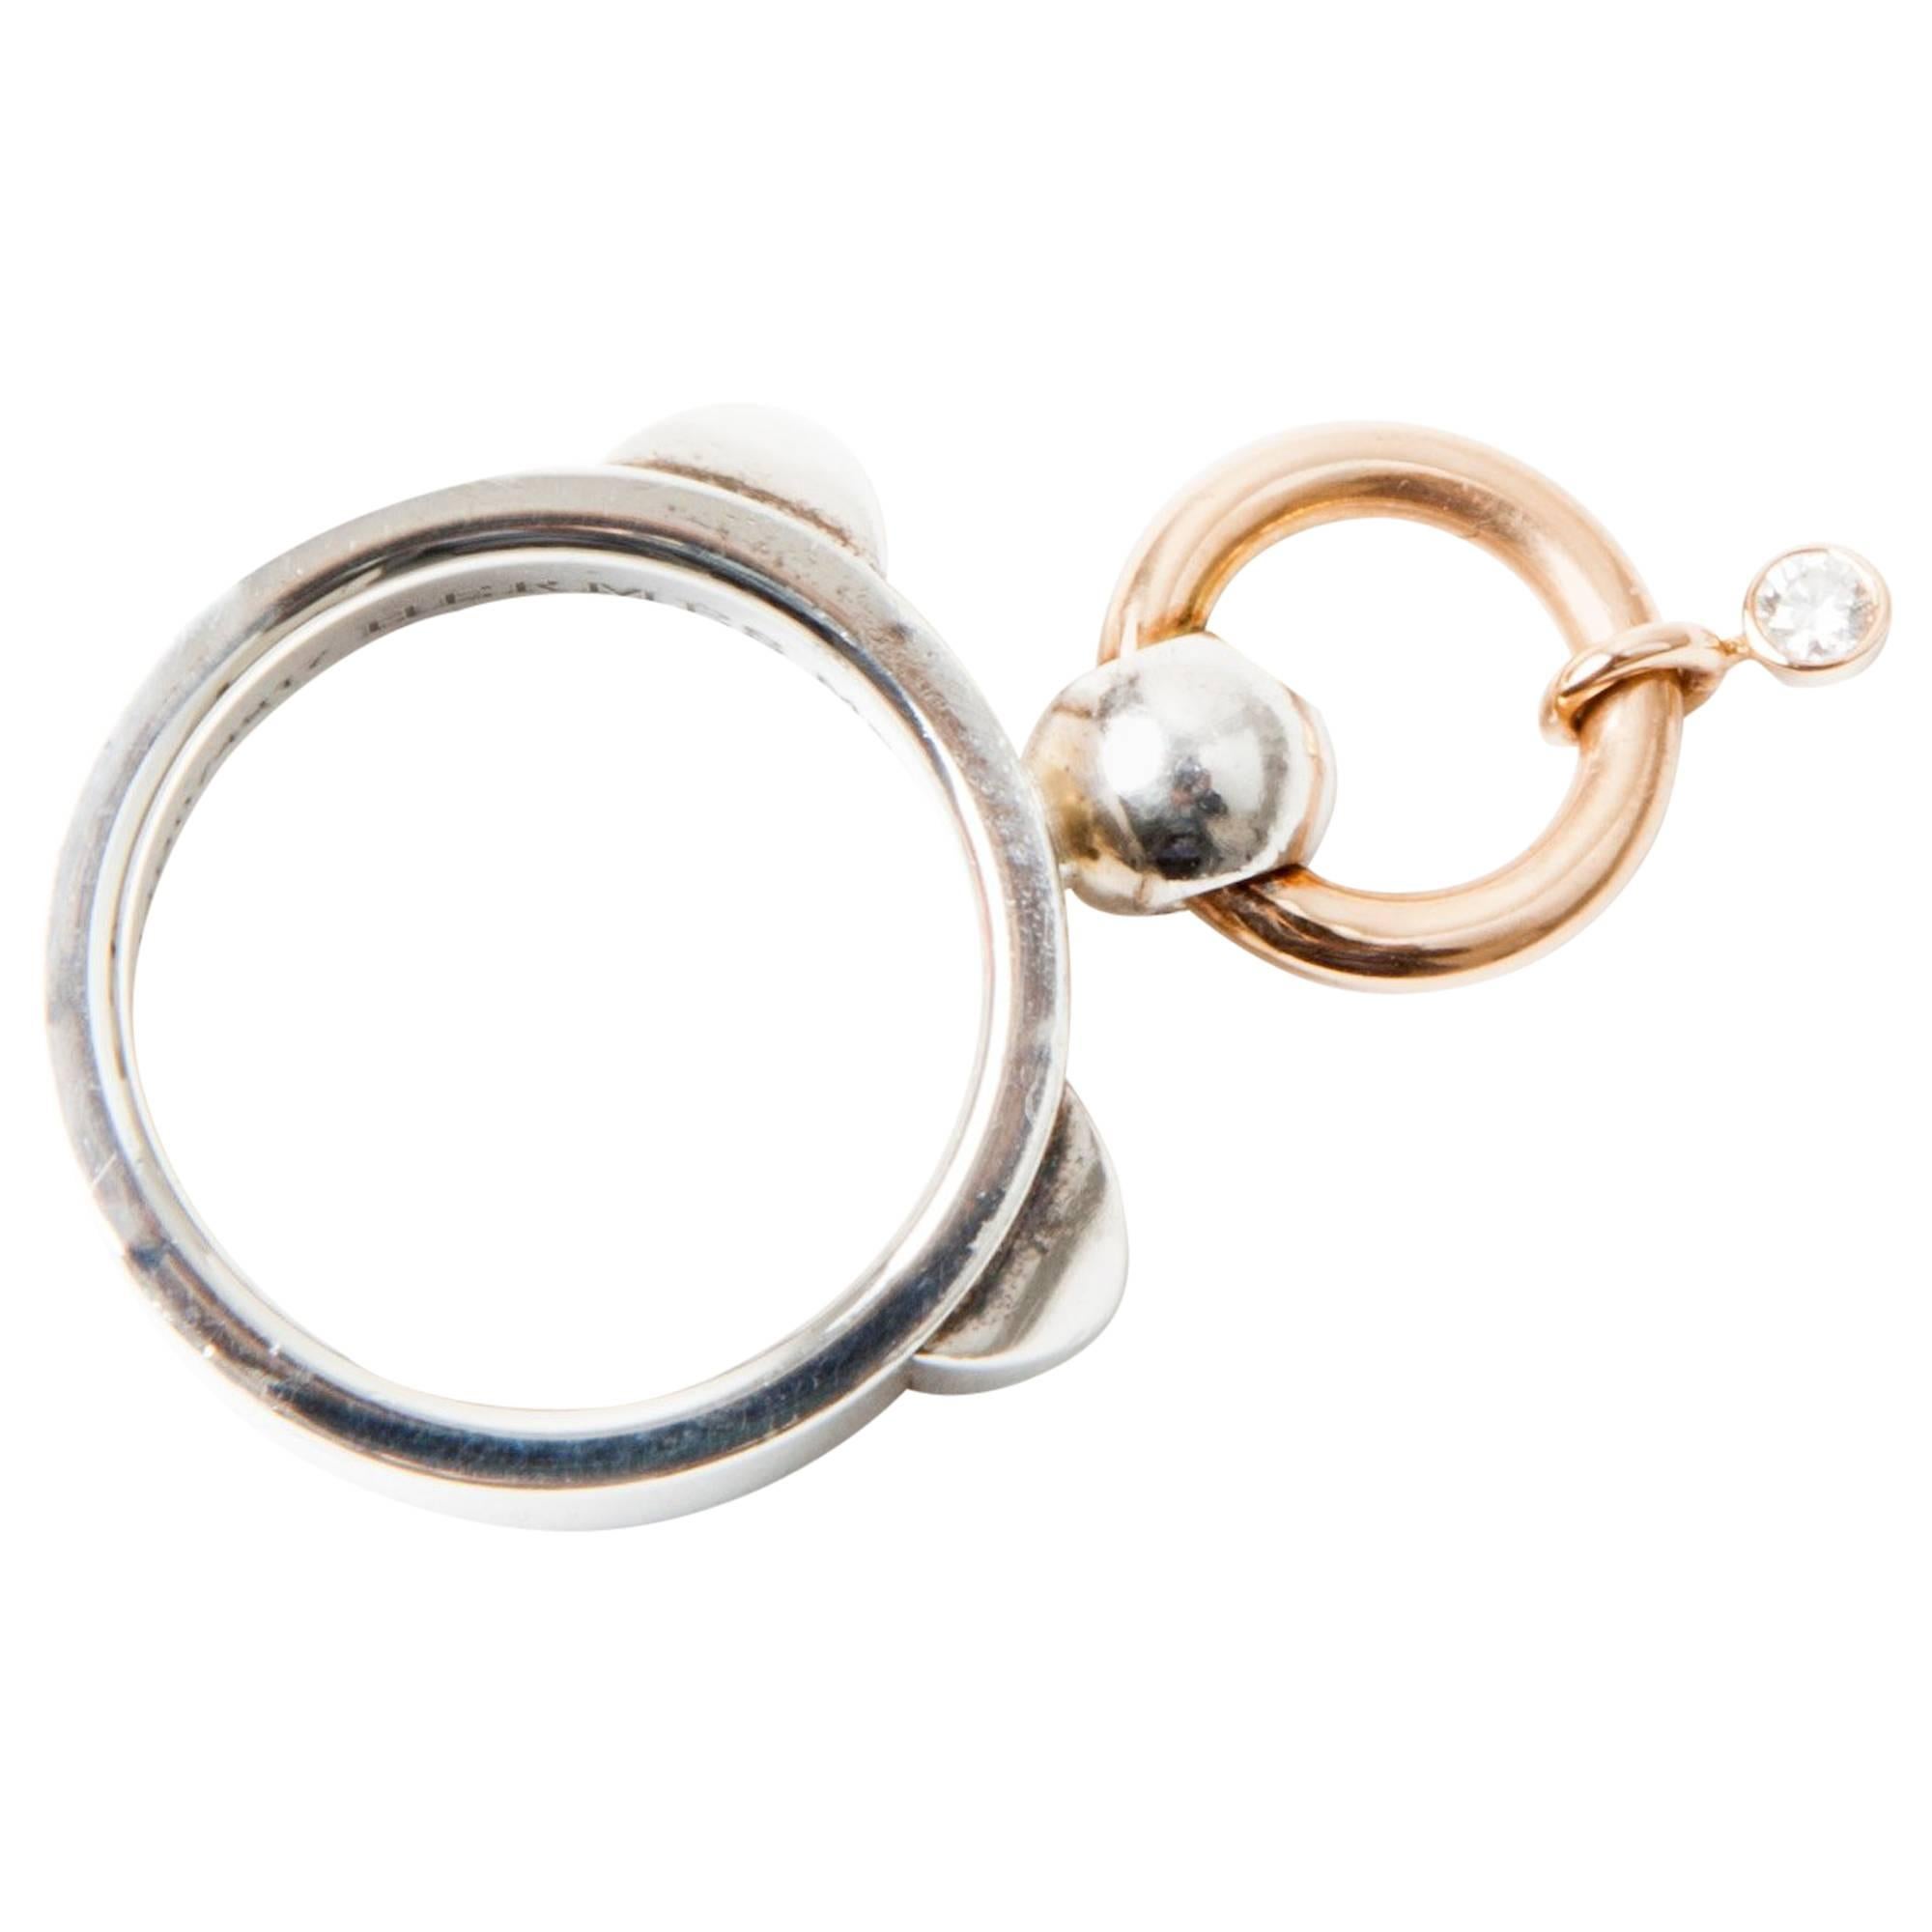 HERMES Ring, Collier de Chien, aus Sterlingsilber, Gold und Diamant. EU-Größe 54